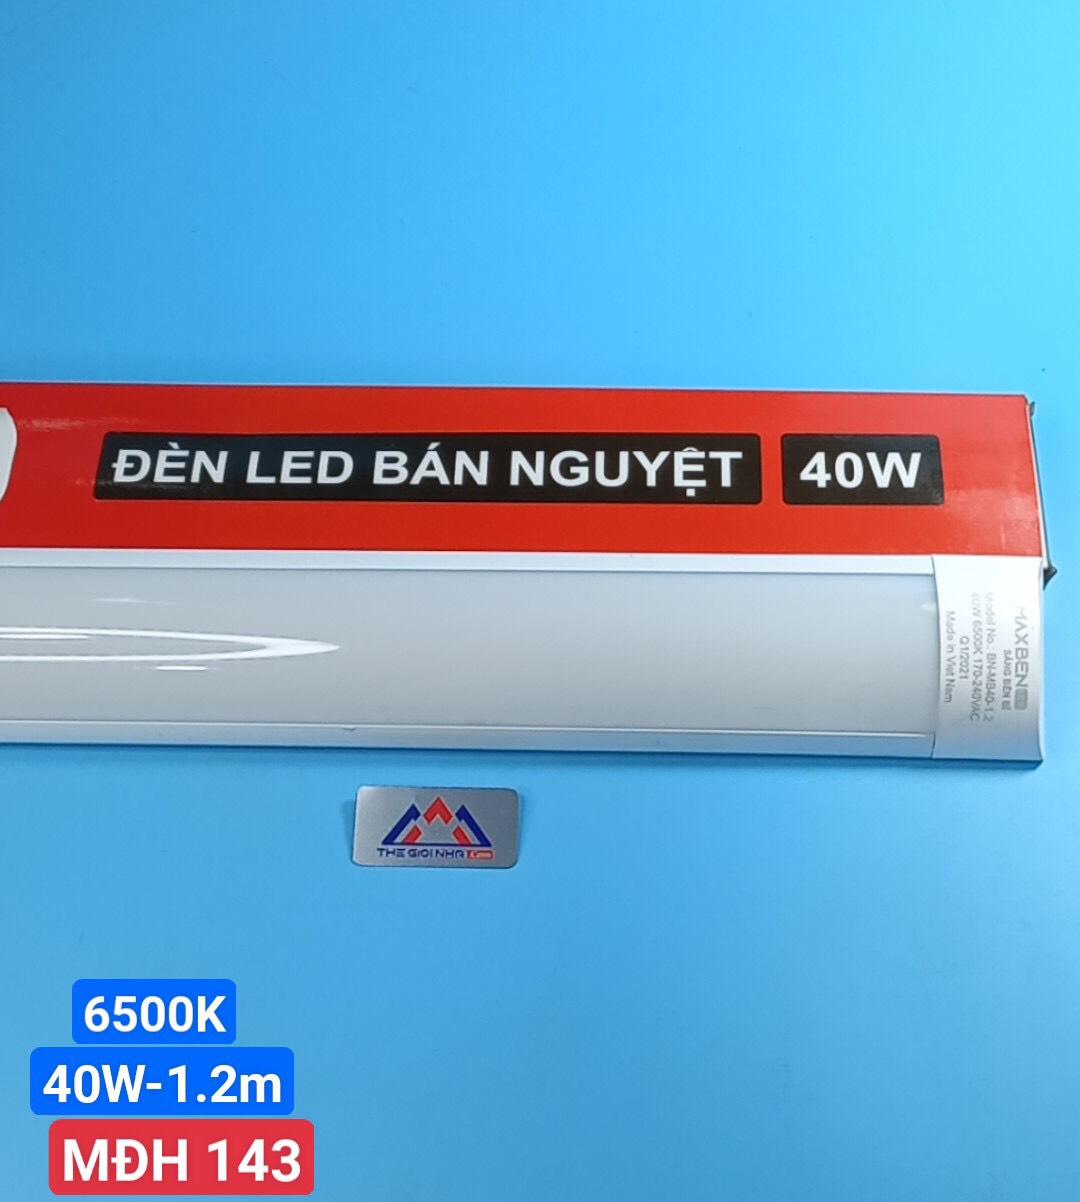 Bóng đèn led tube bán nguyệt 40w, Maxben bn-mb-40-1.2-t, ánh sáng trắng (6500k)